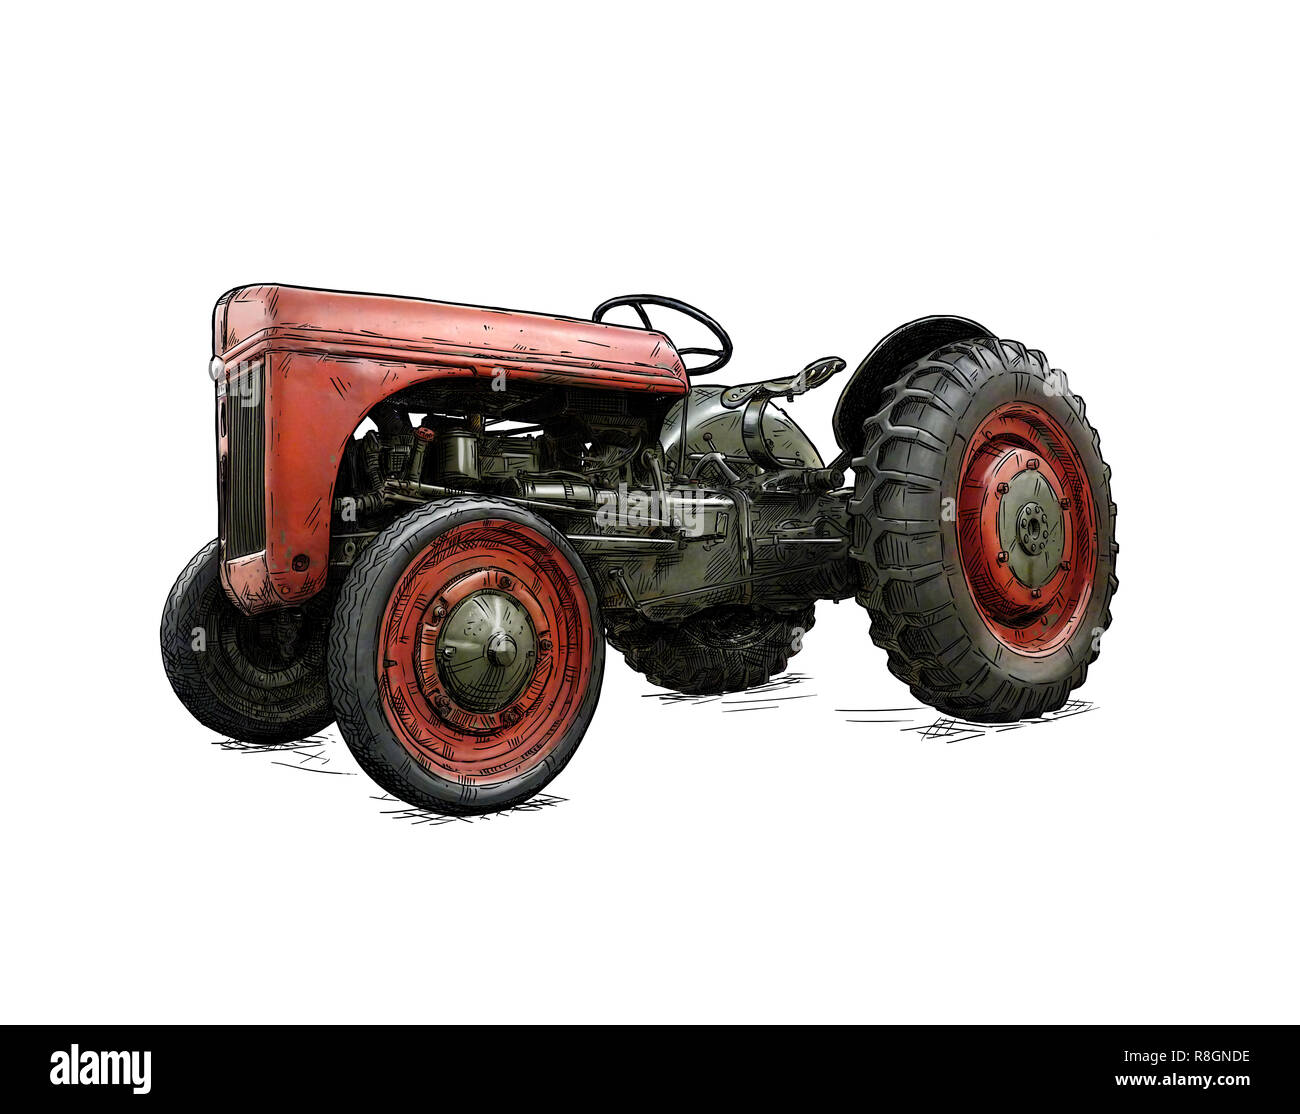 Cartoon o stile fumetto illustrazione del vecchio o Vintage trattore rosso Foto Stock